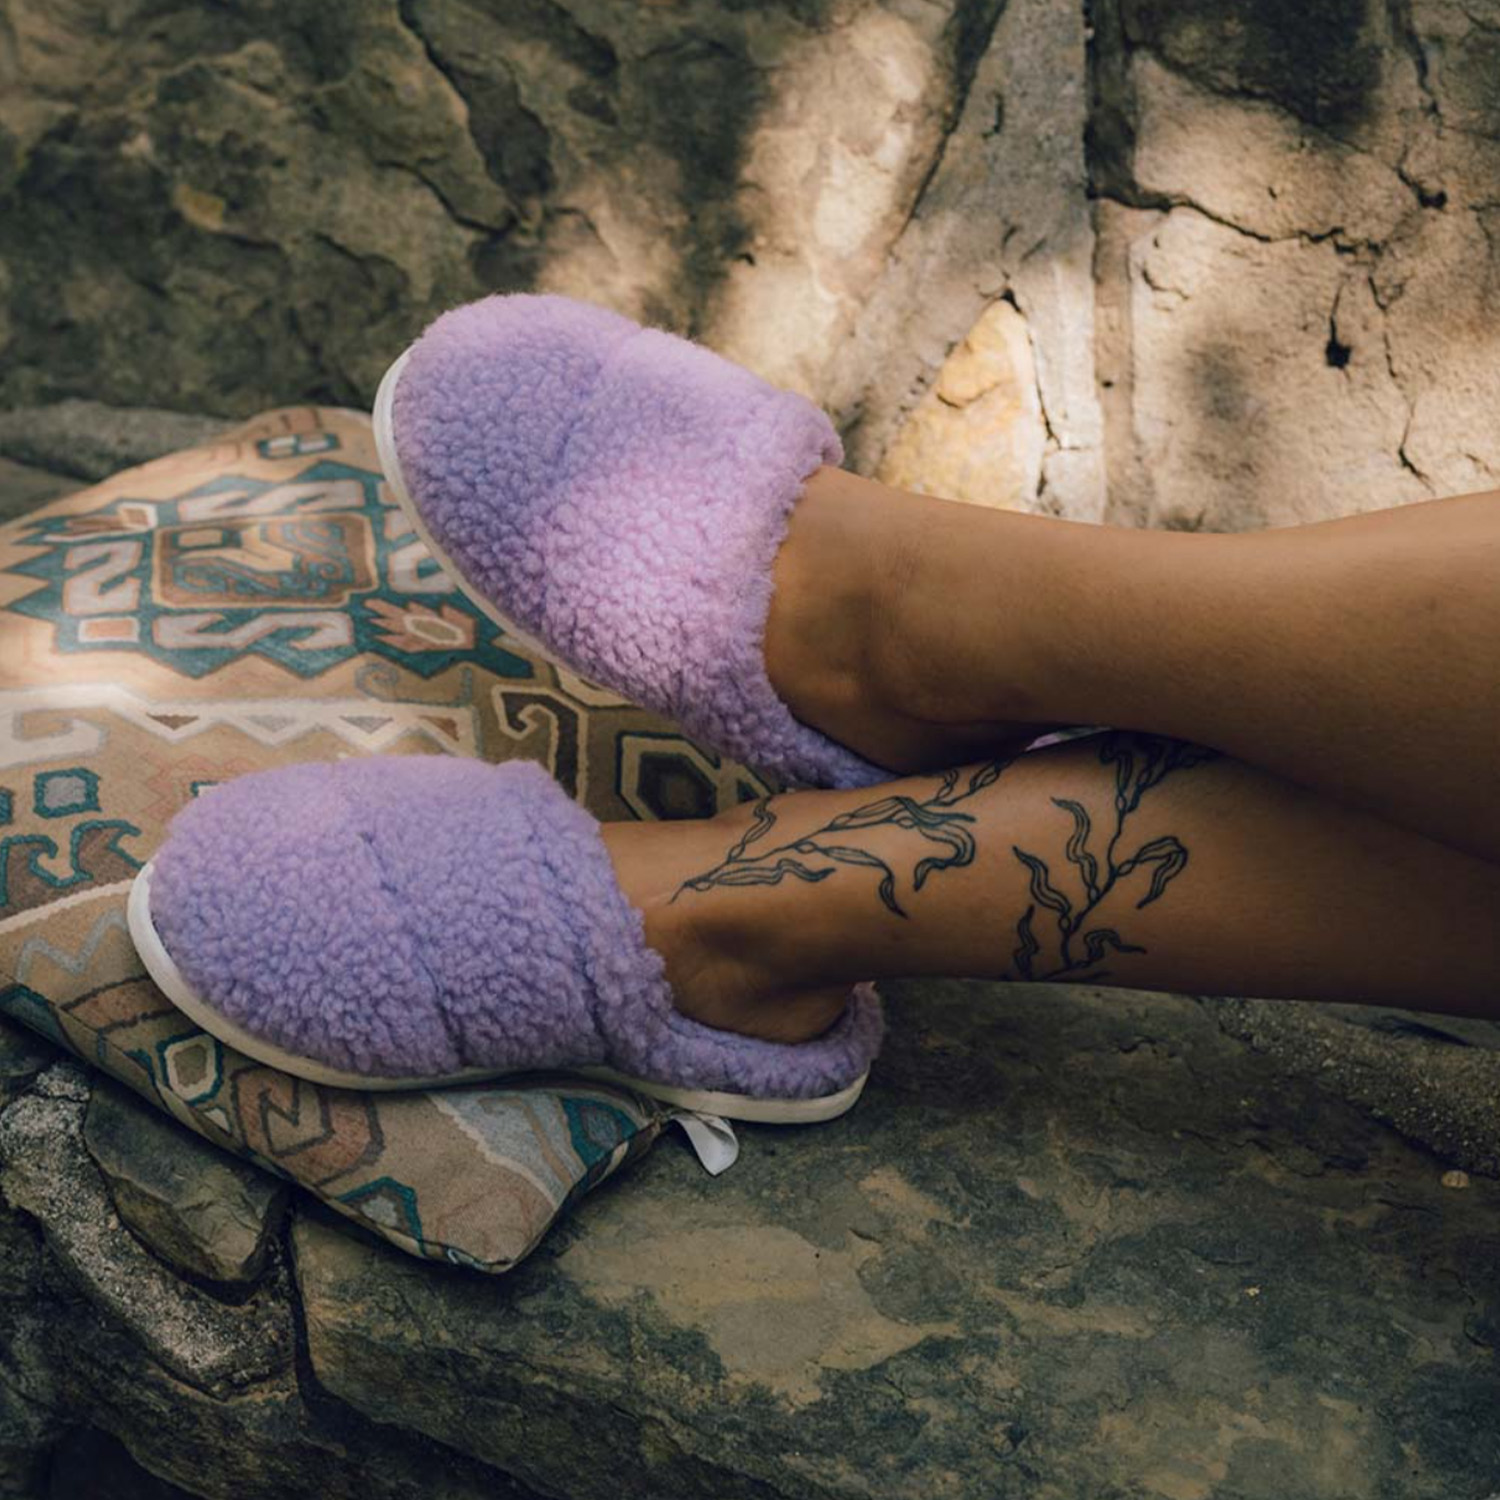 SeaVees slippers on feet